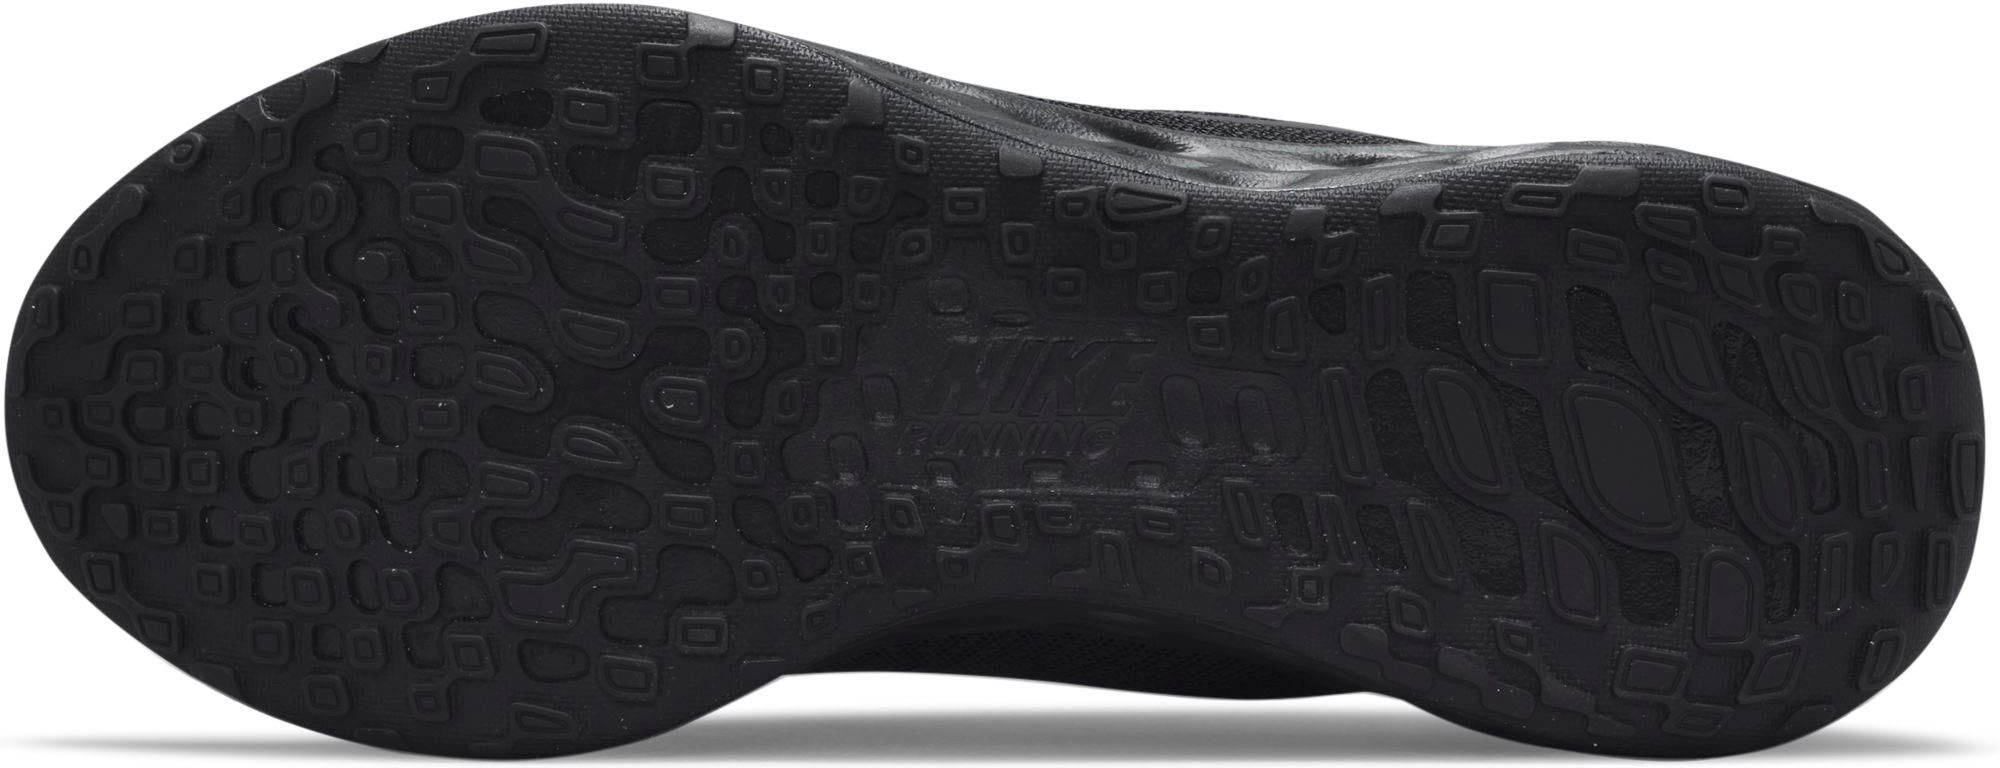 Nike NEXT Laufschuh schwarz 6 REVOLUTION NATURE